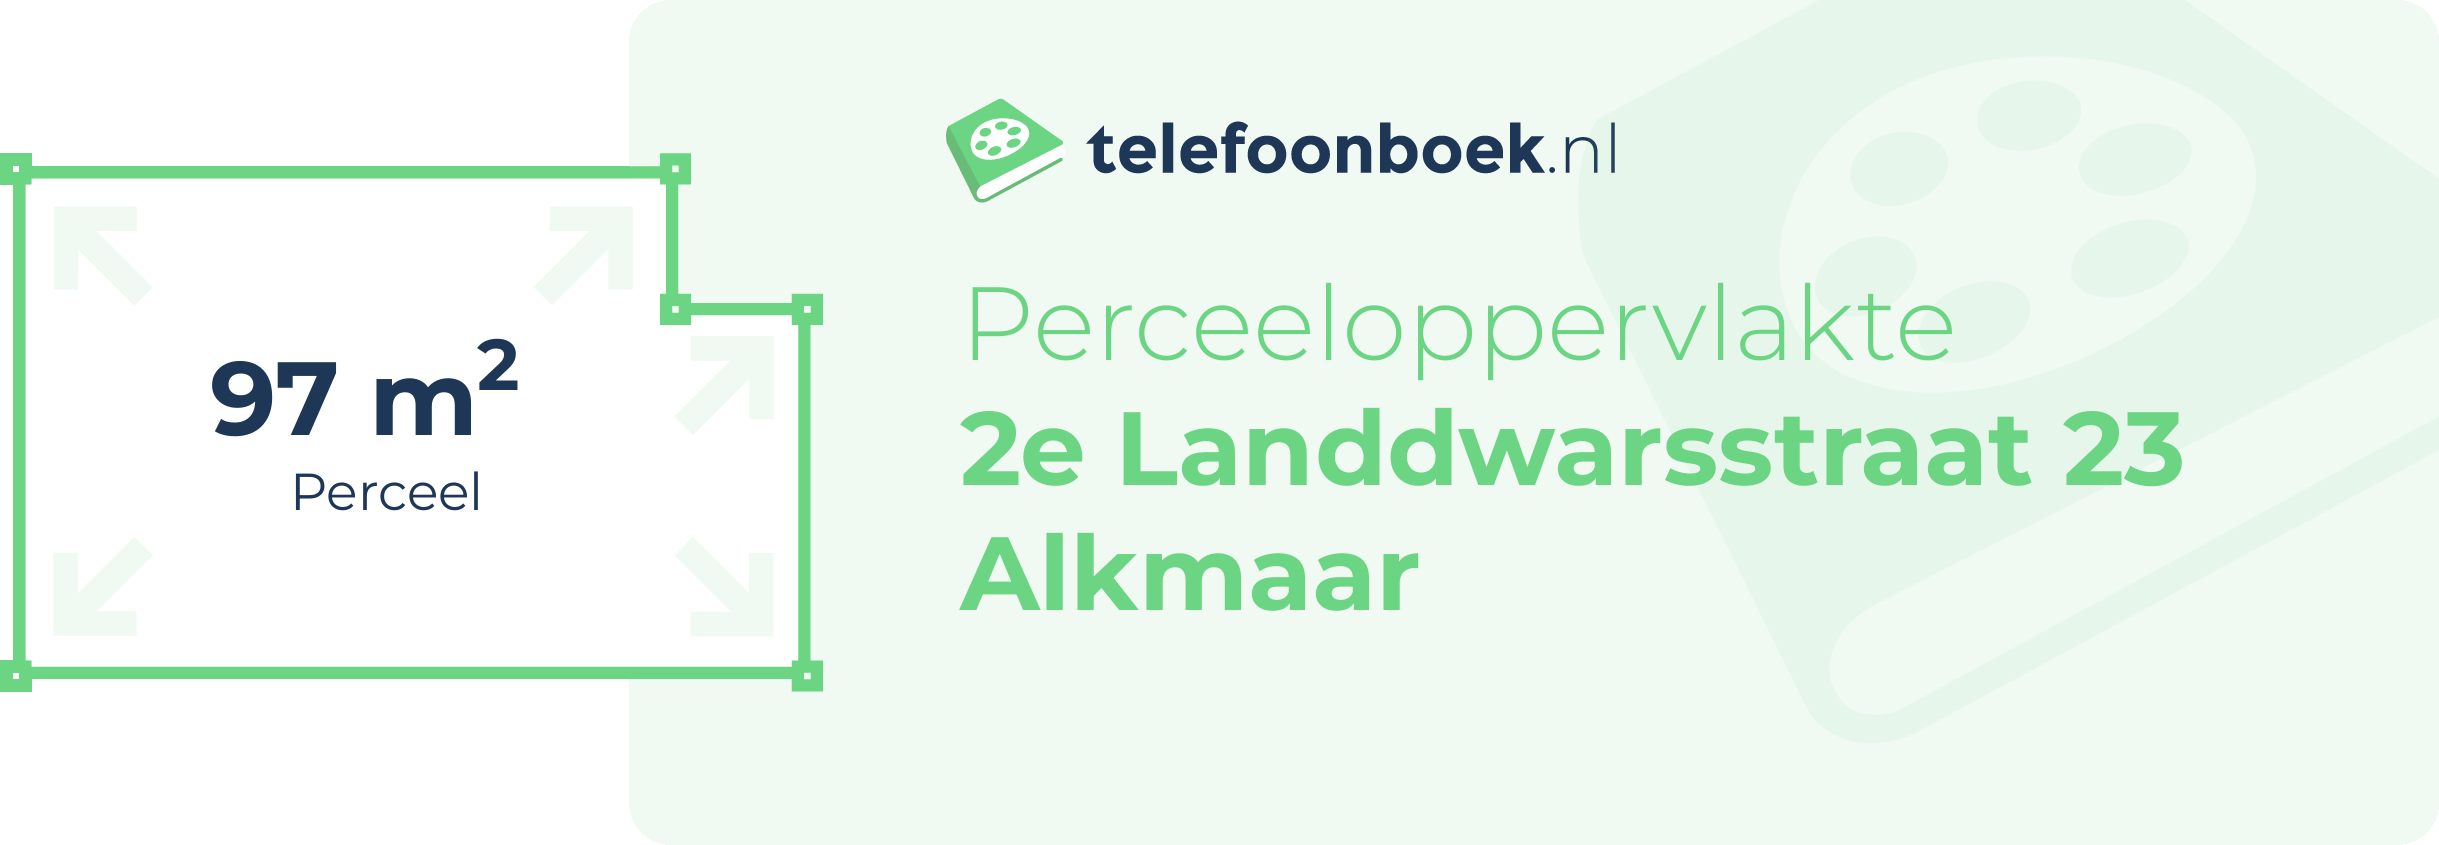 Perceeloppervlakte 2e Landdwarsstraat 23 Alkmaar